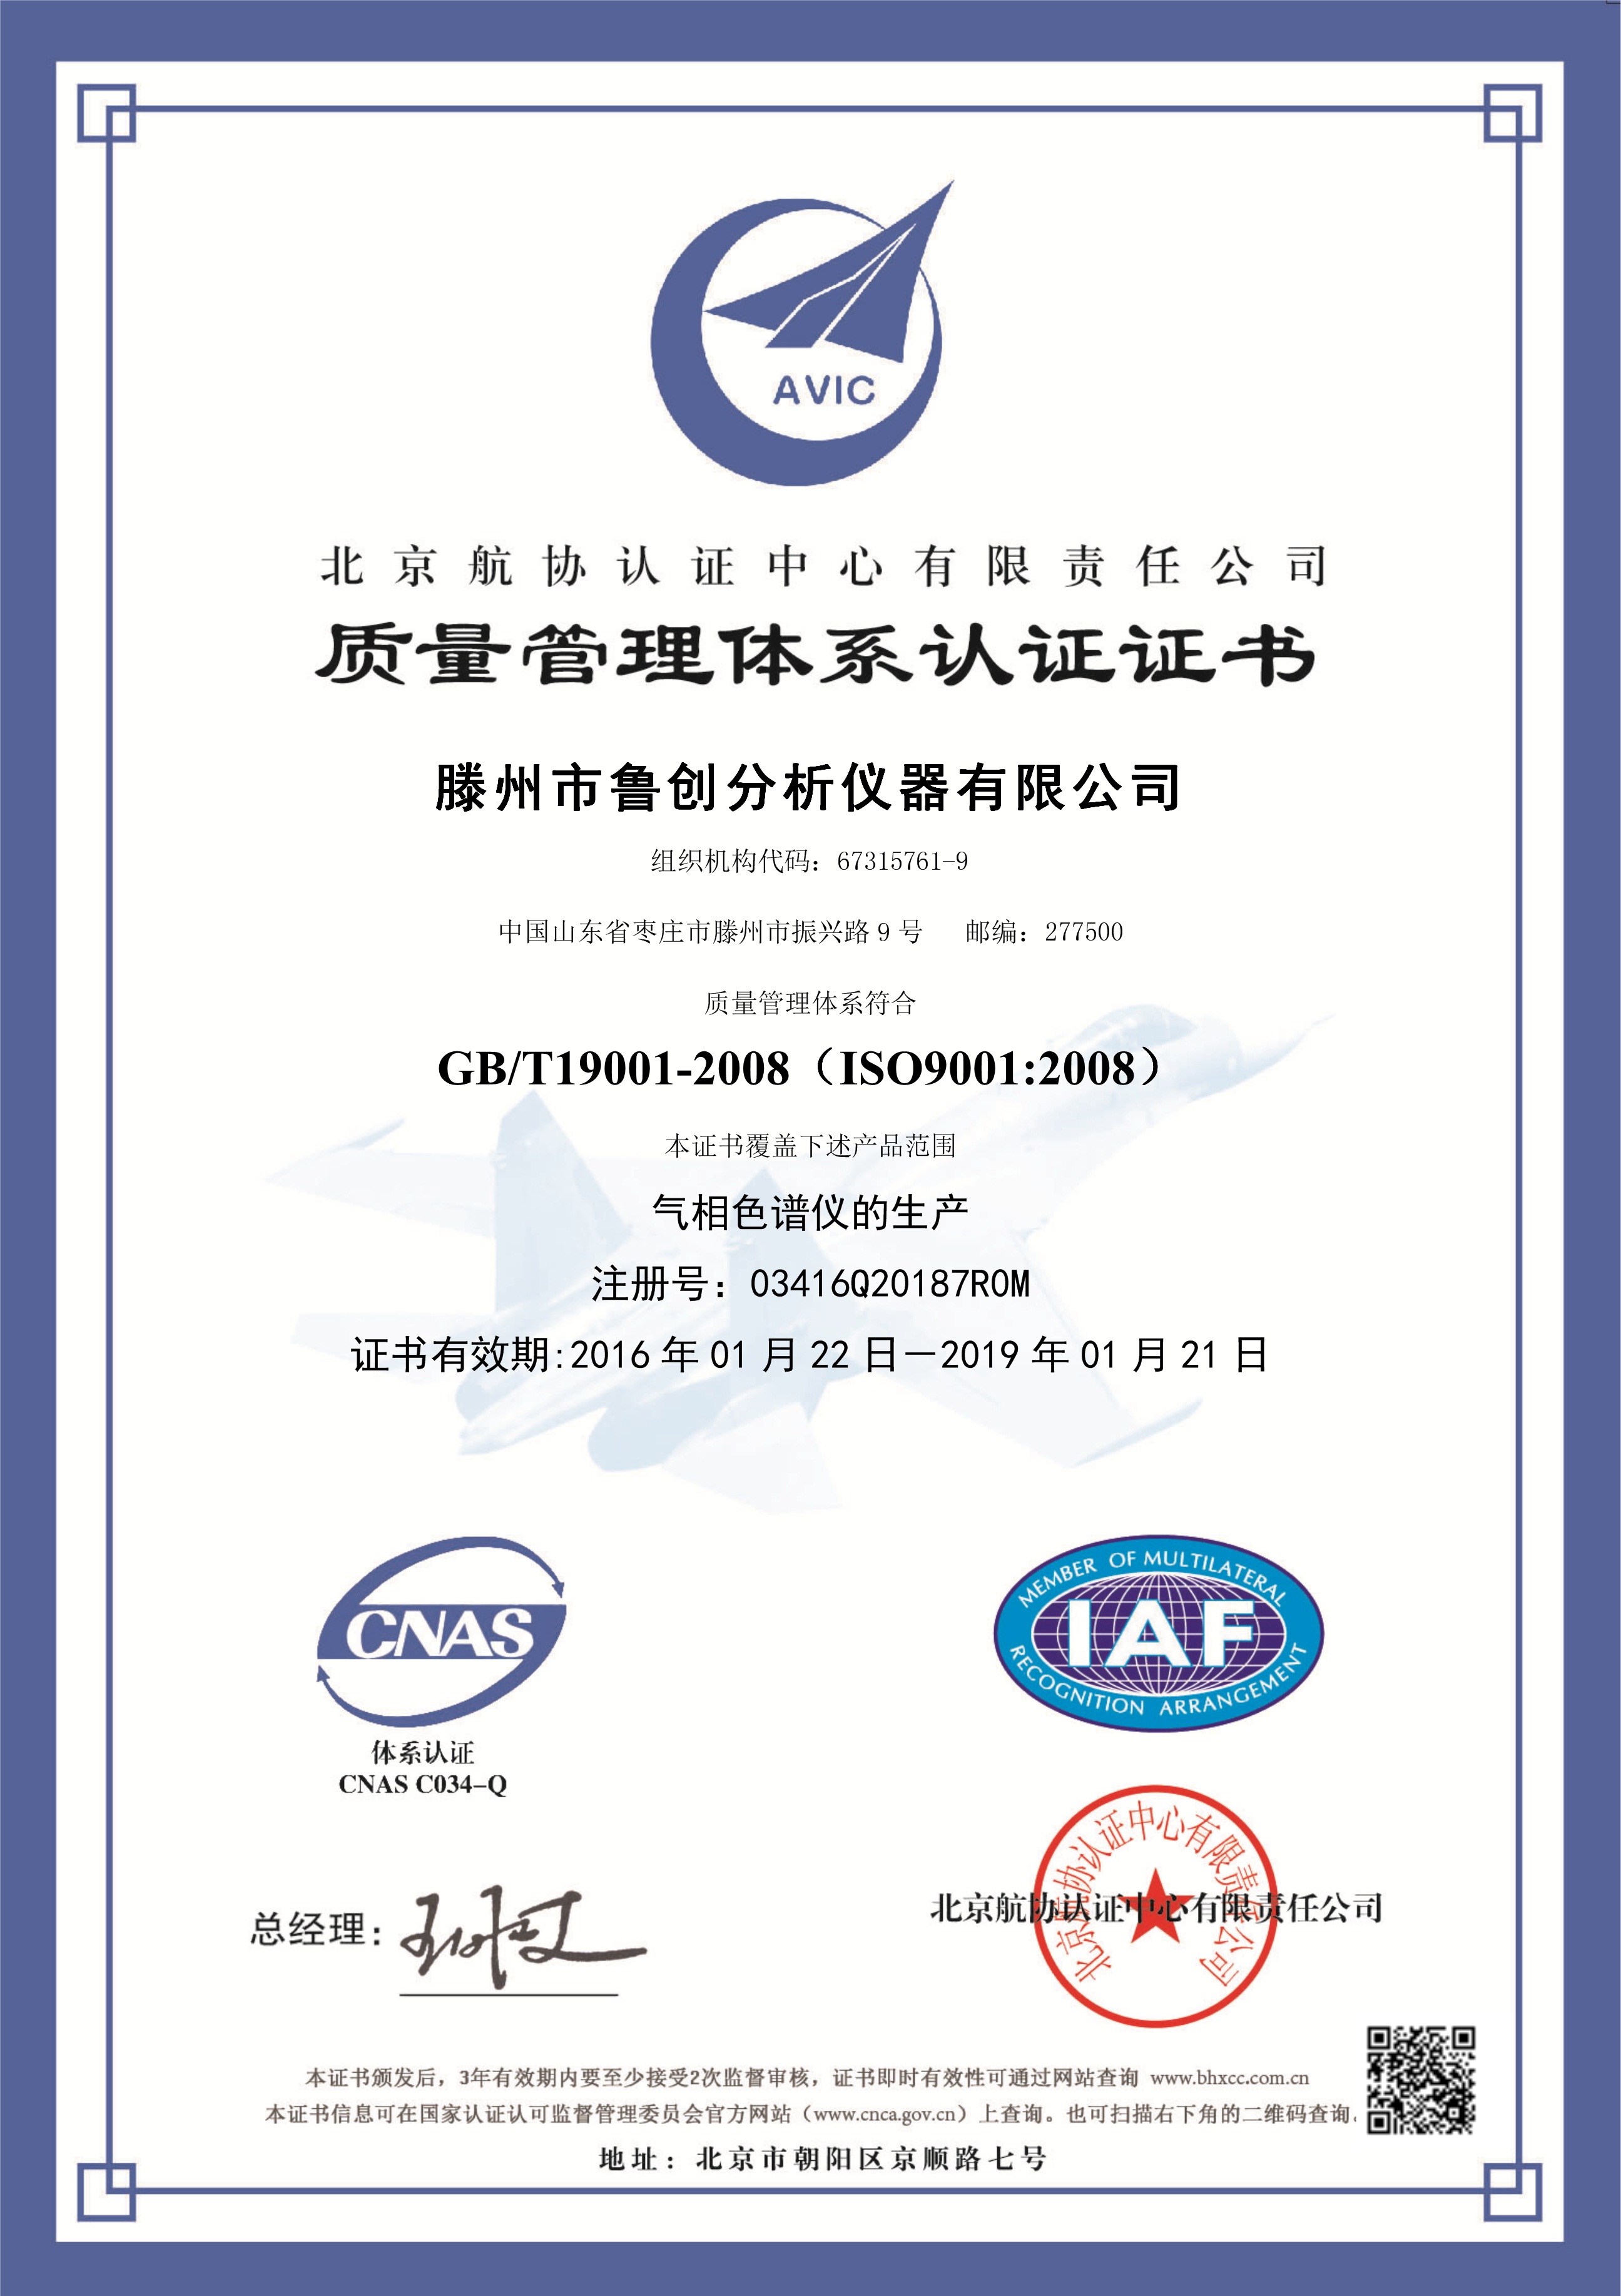 鲁创公司顺利通过ISO9001:2008质量管理体系认证审核_色谱仪,气相色谱仪,鲁创仪器_其它资讯_中国化工仪器网